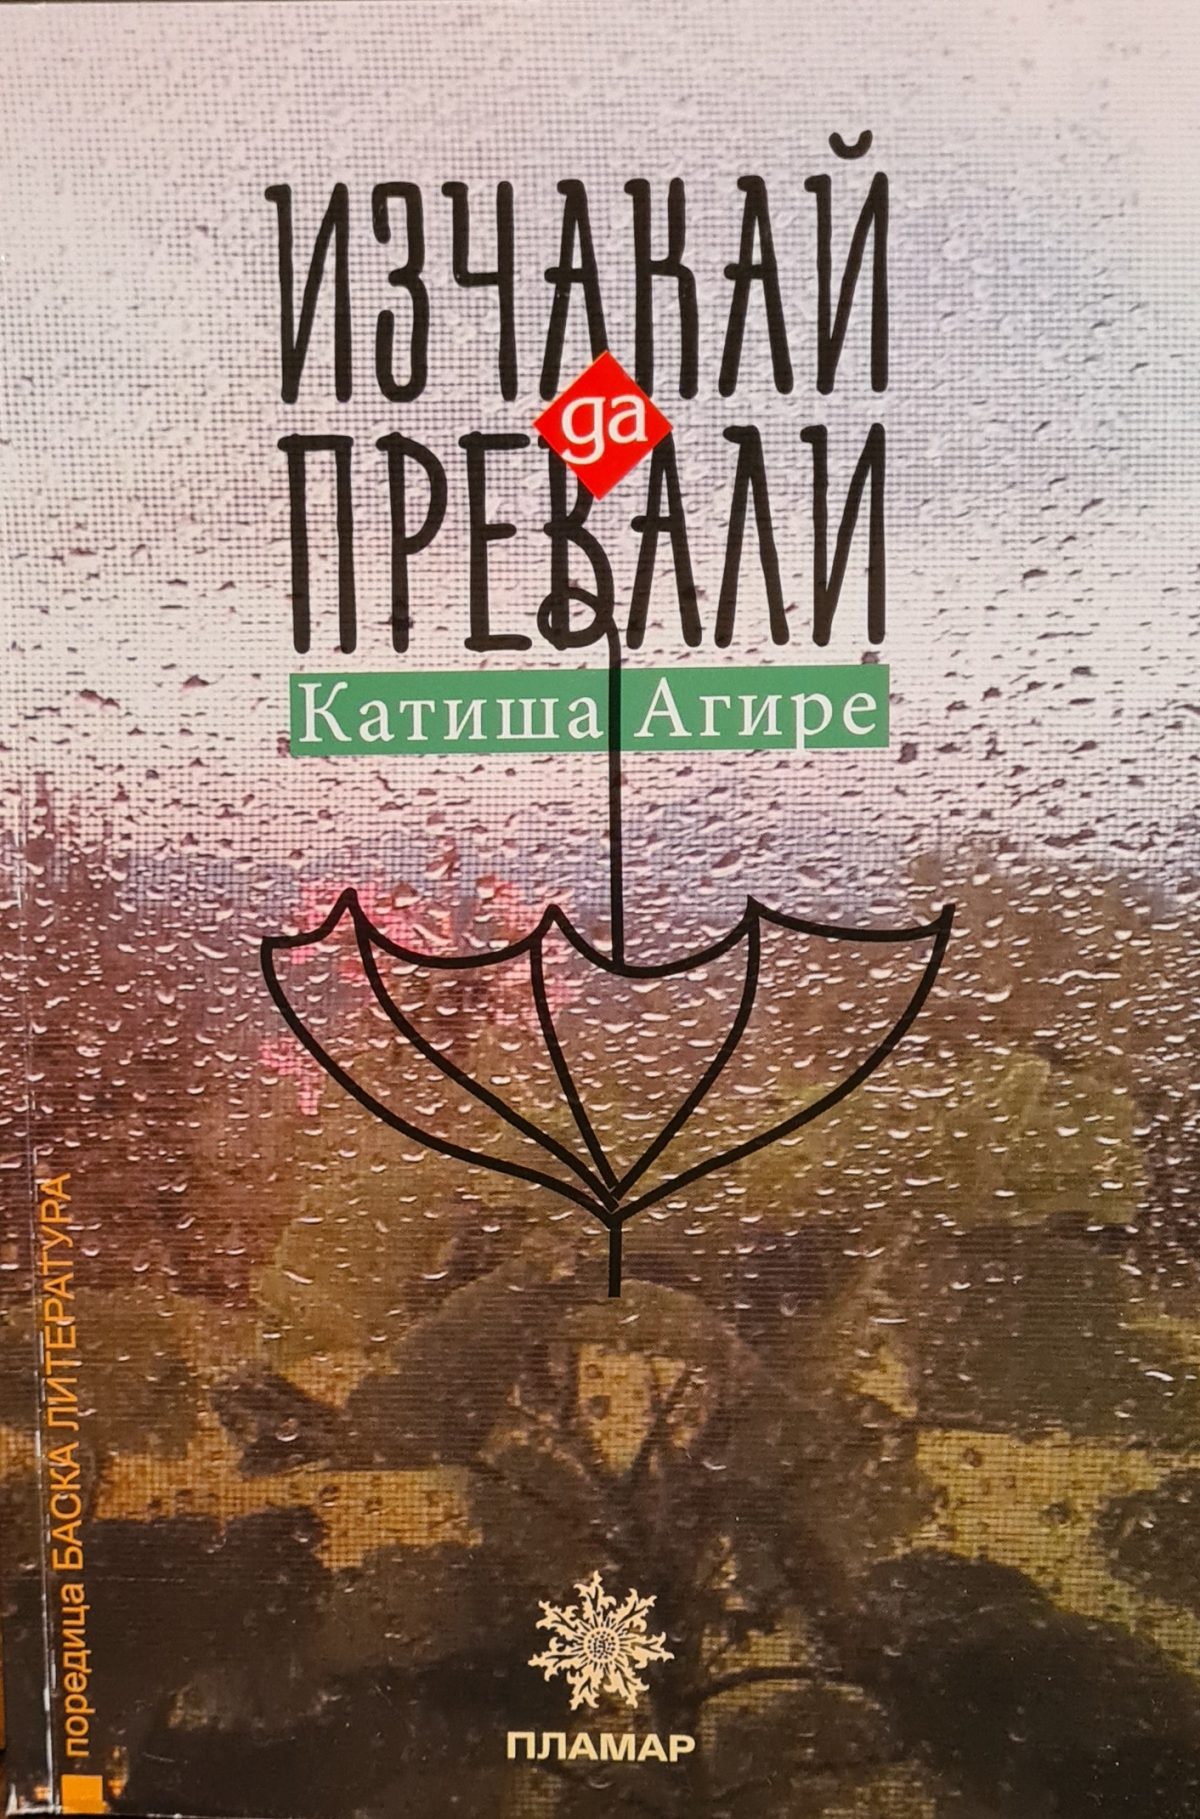 "Изчакай да превали" на Катиша Агире - корица